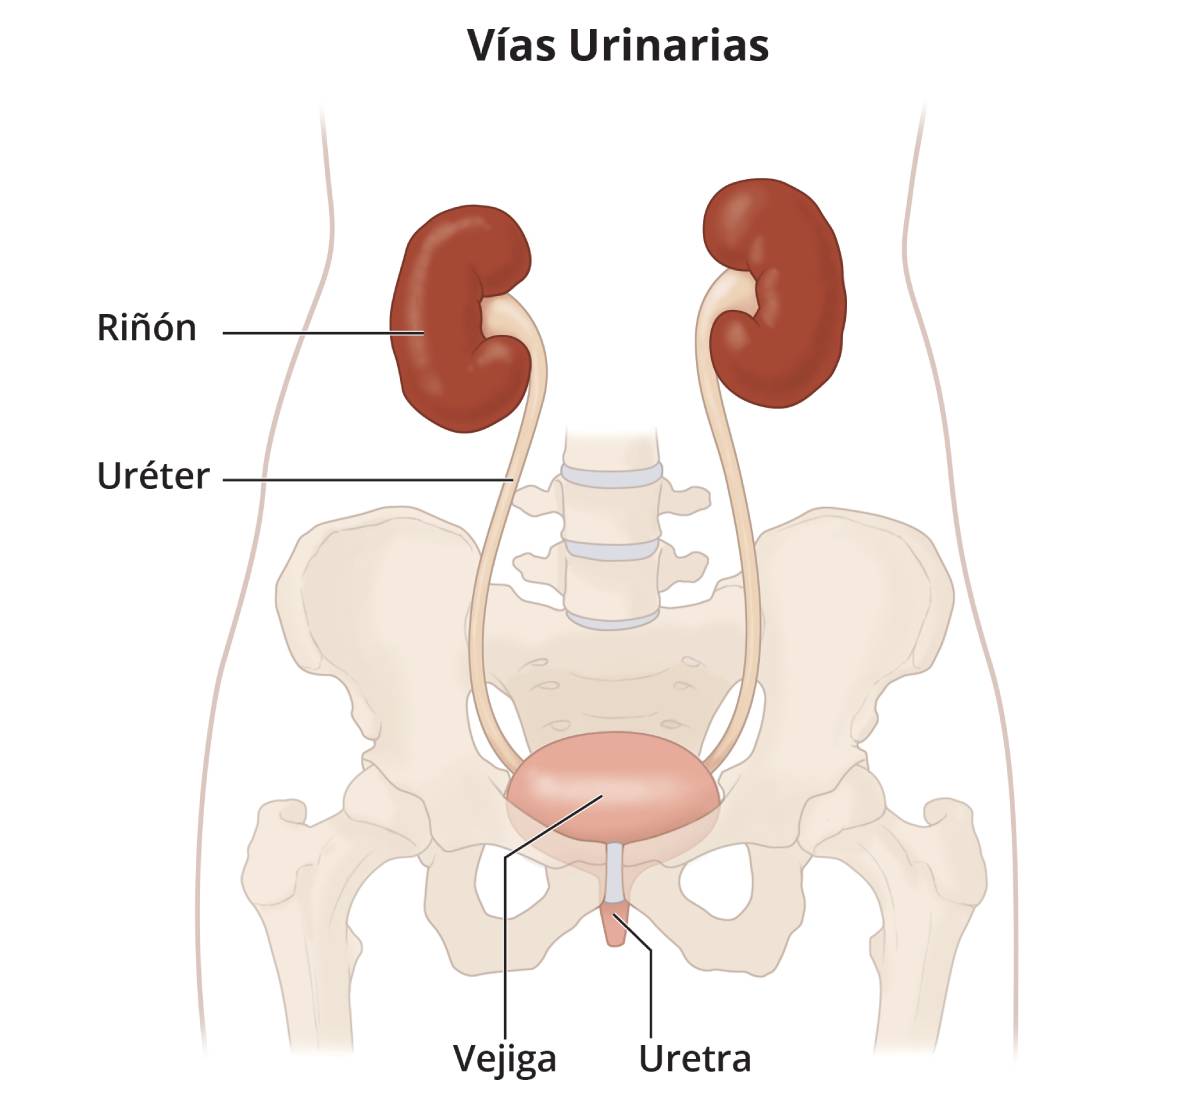 Ilustración de las vías urinarias, que incluyen los riñones, los uréteres, la vejiga y la uretra.